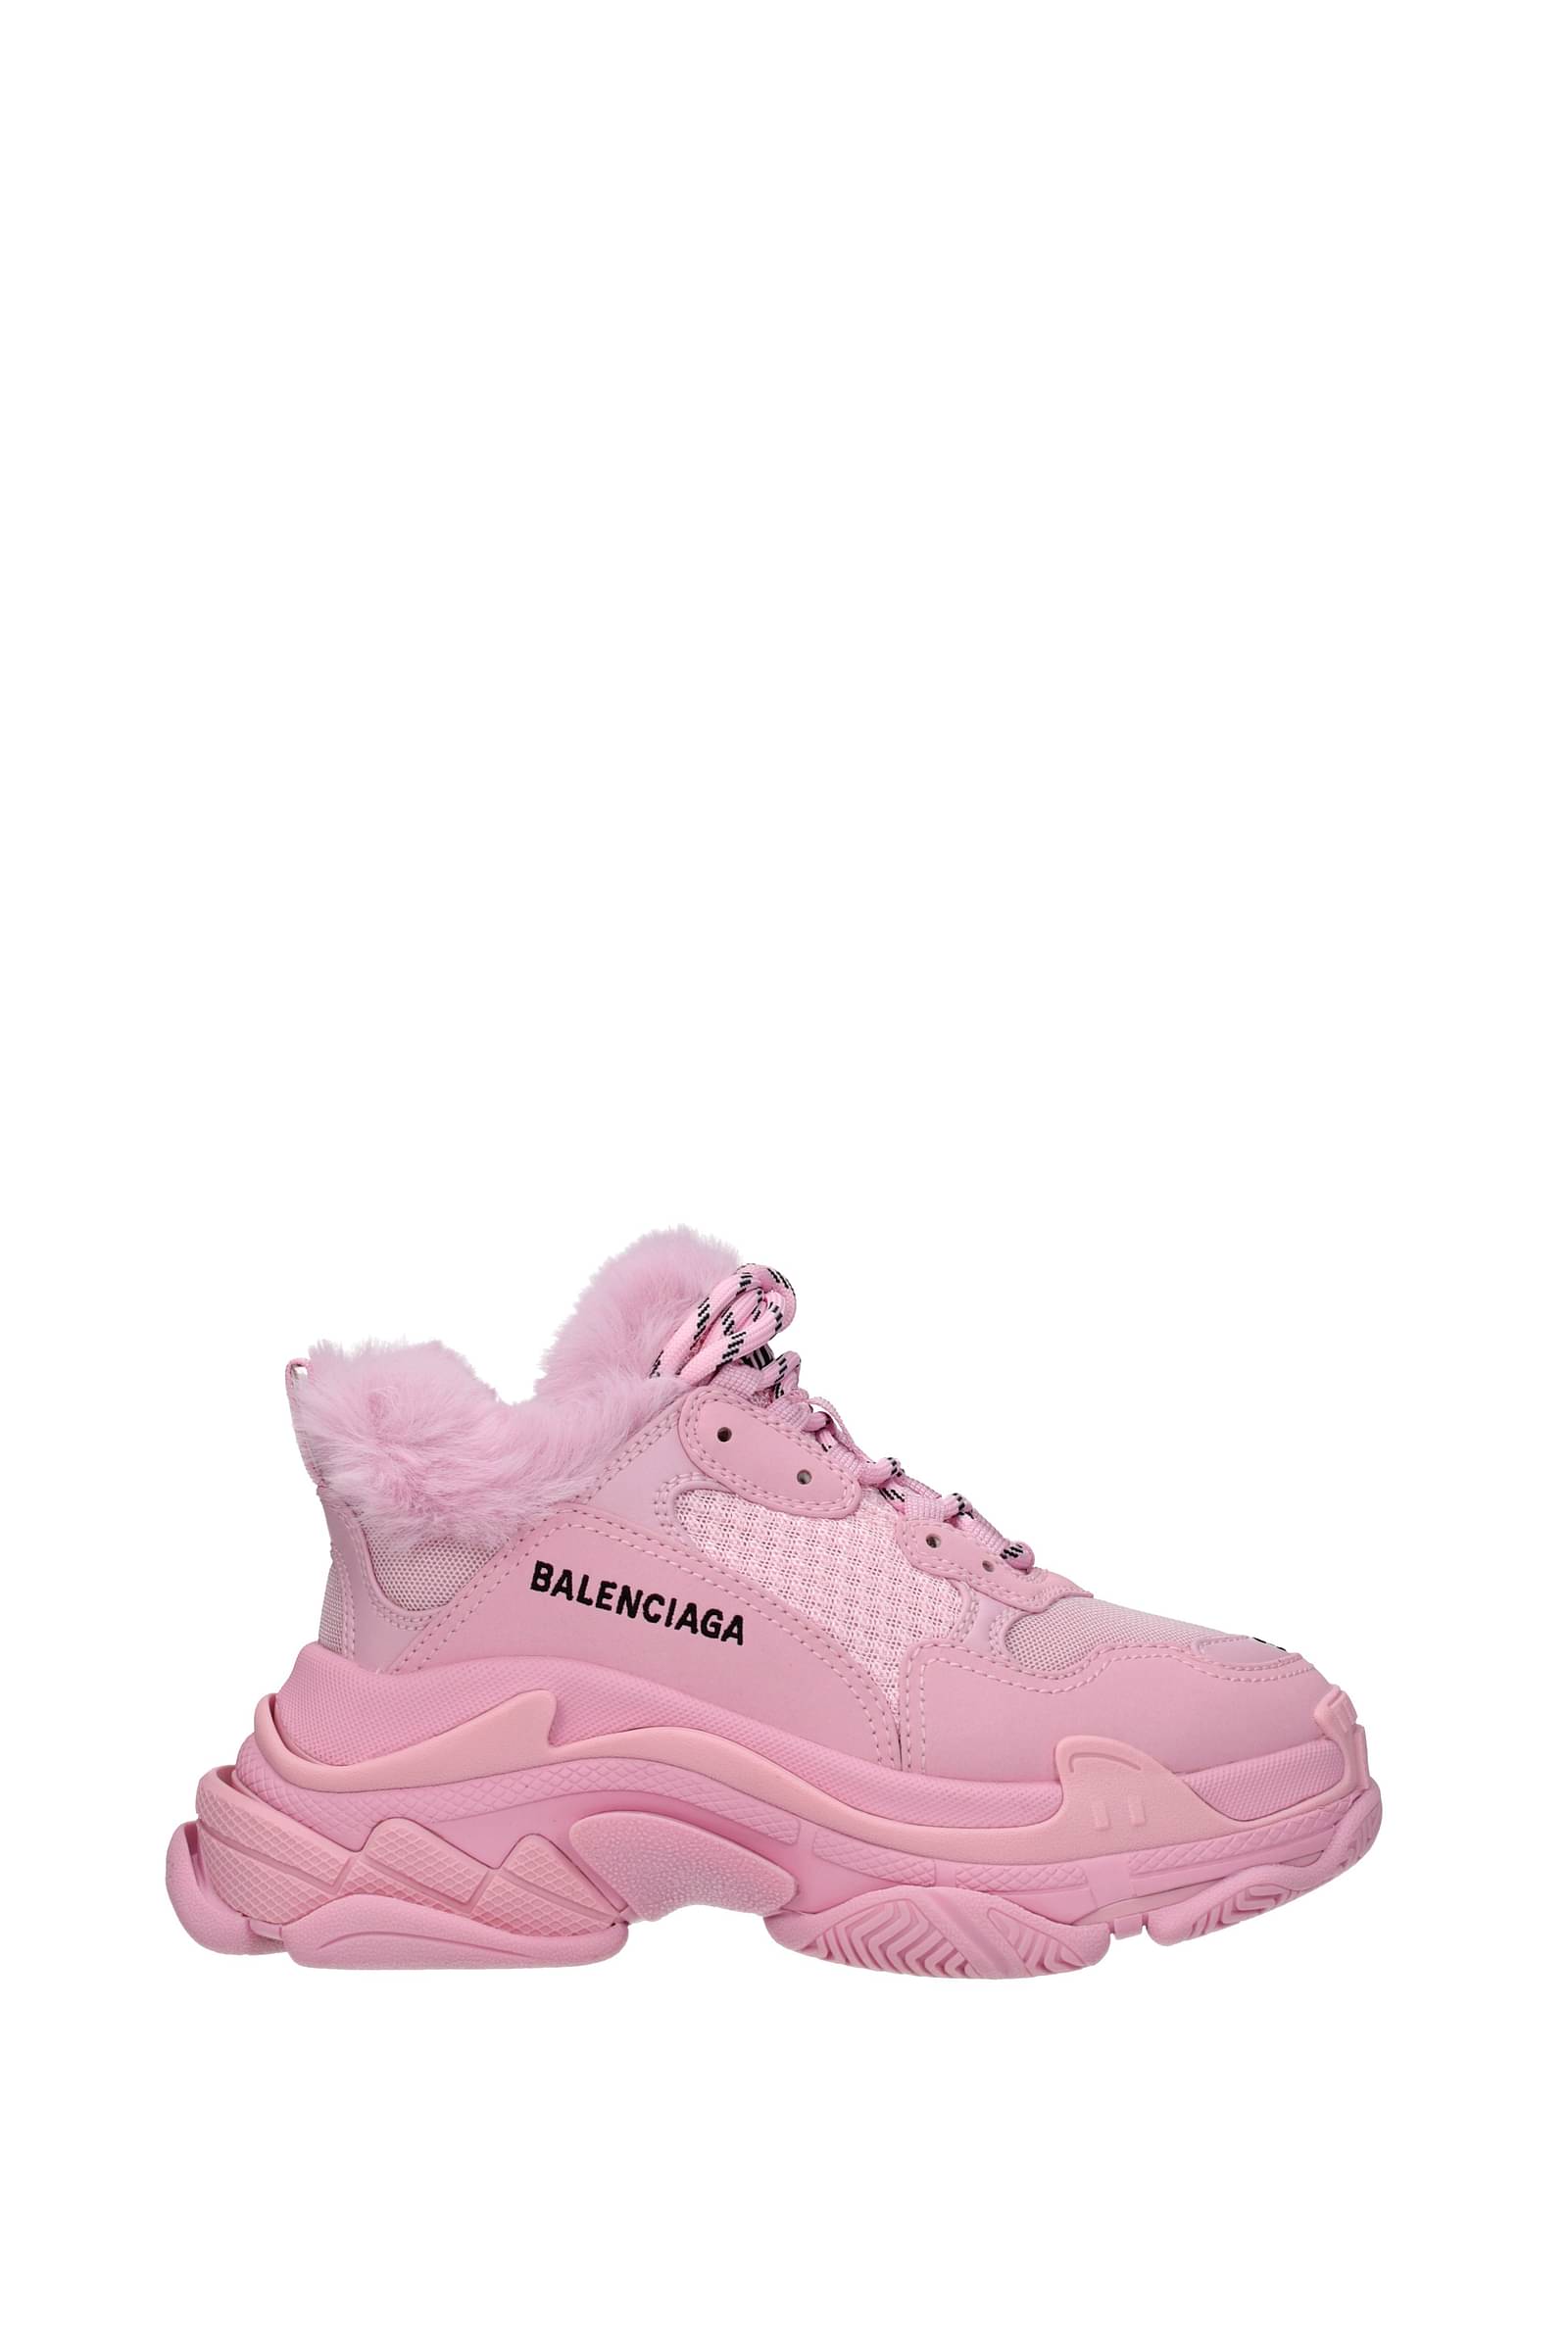 BALENCIAGA TRIPLE S CLEAR SOLE IN PINK SoHo Sneaker